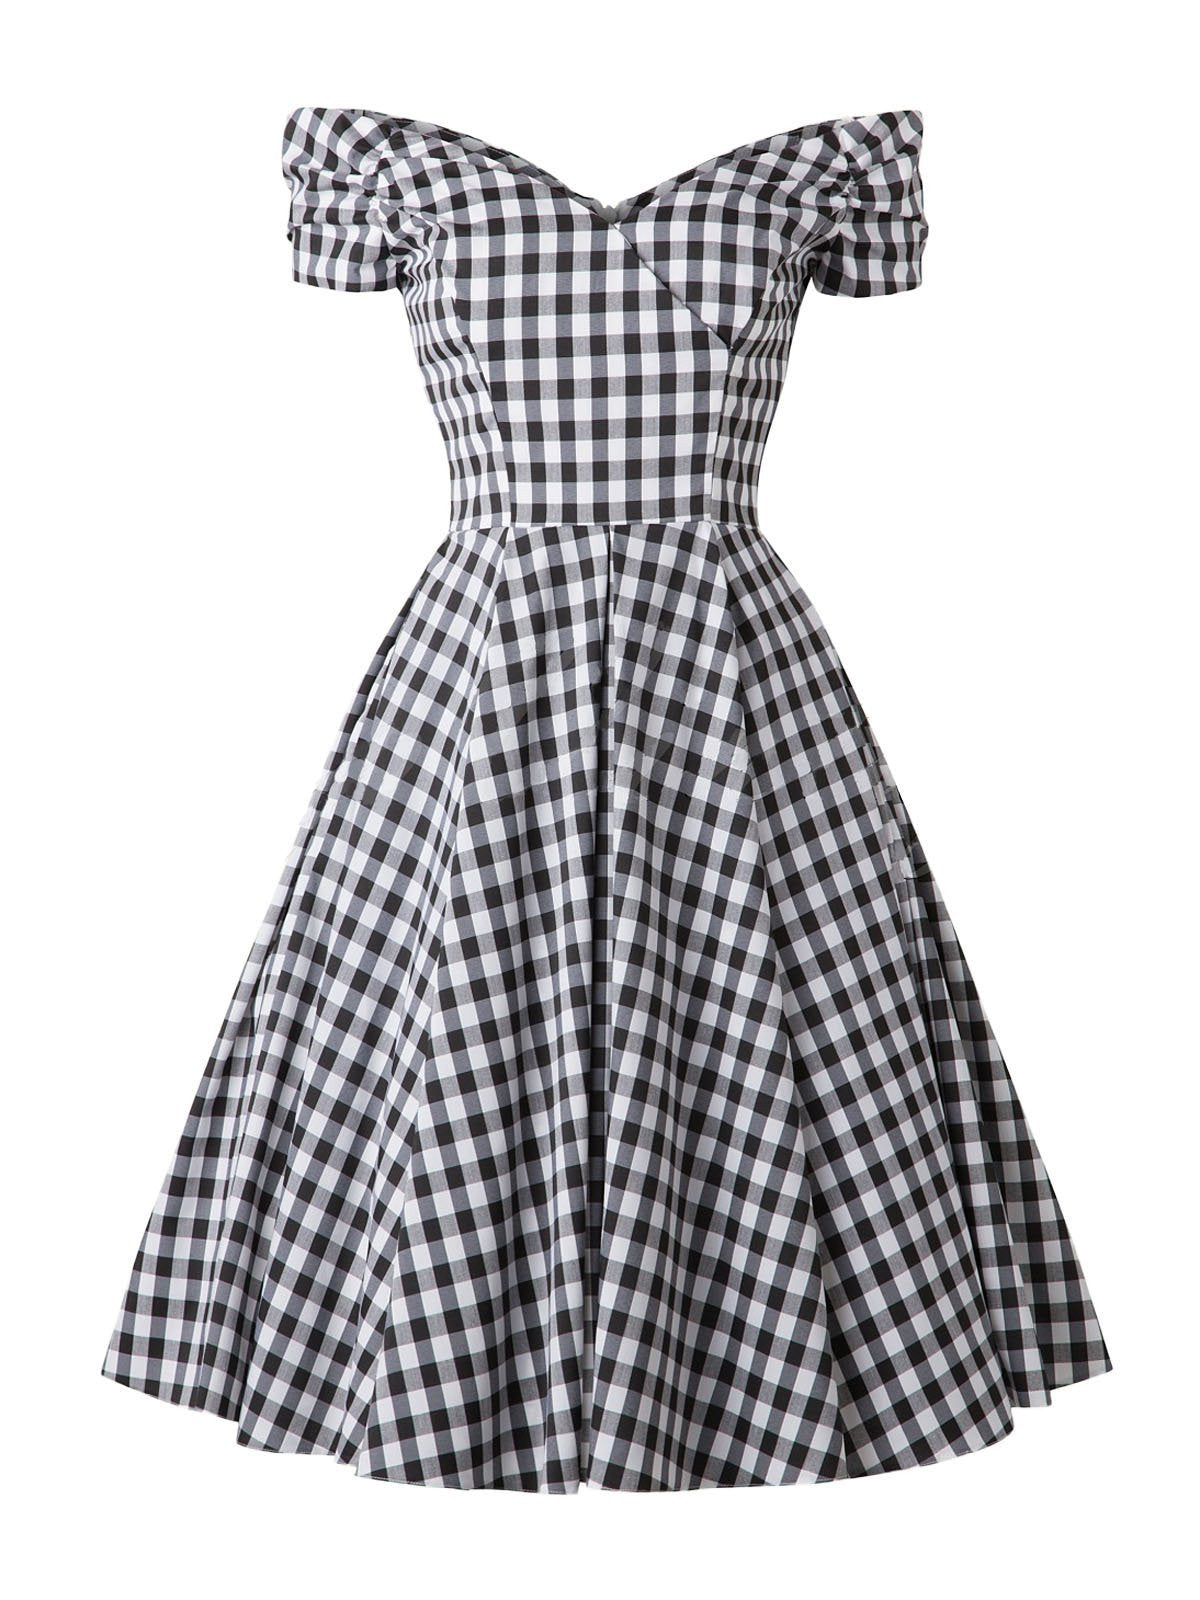 Черное свободное платье в клетку 1950-х годов